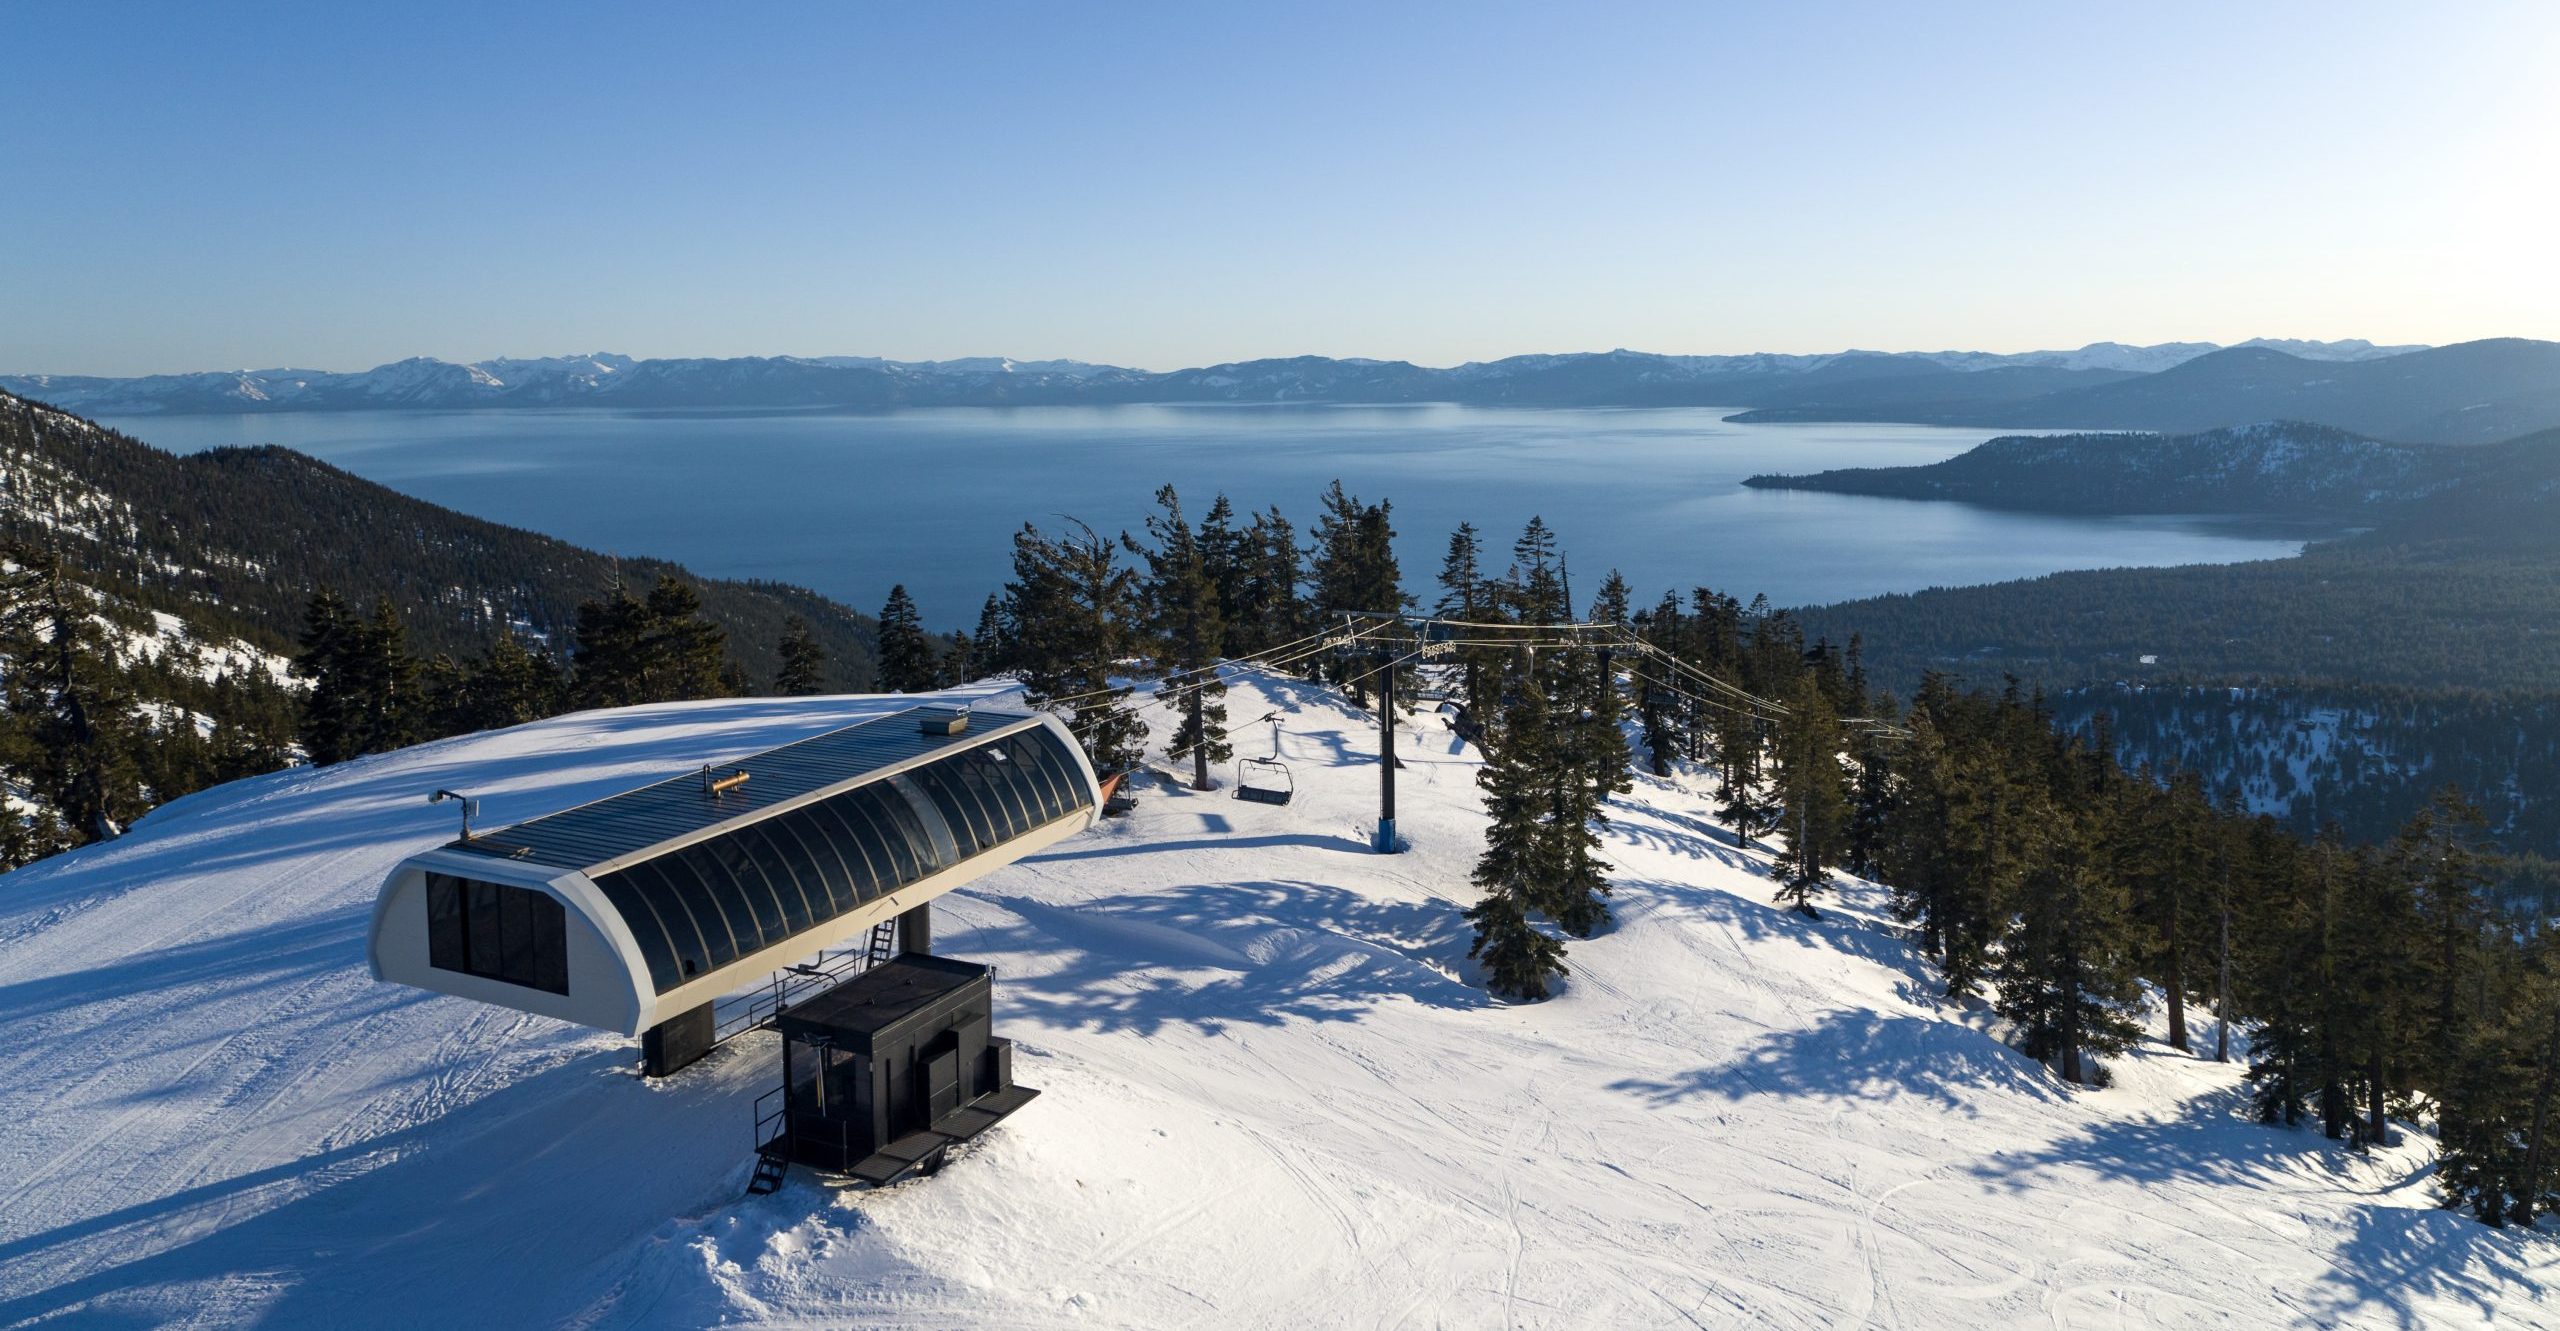 Skiers enjoying winter sports at Diamond Peak Ski Resort, Lake Tahoe